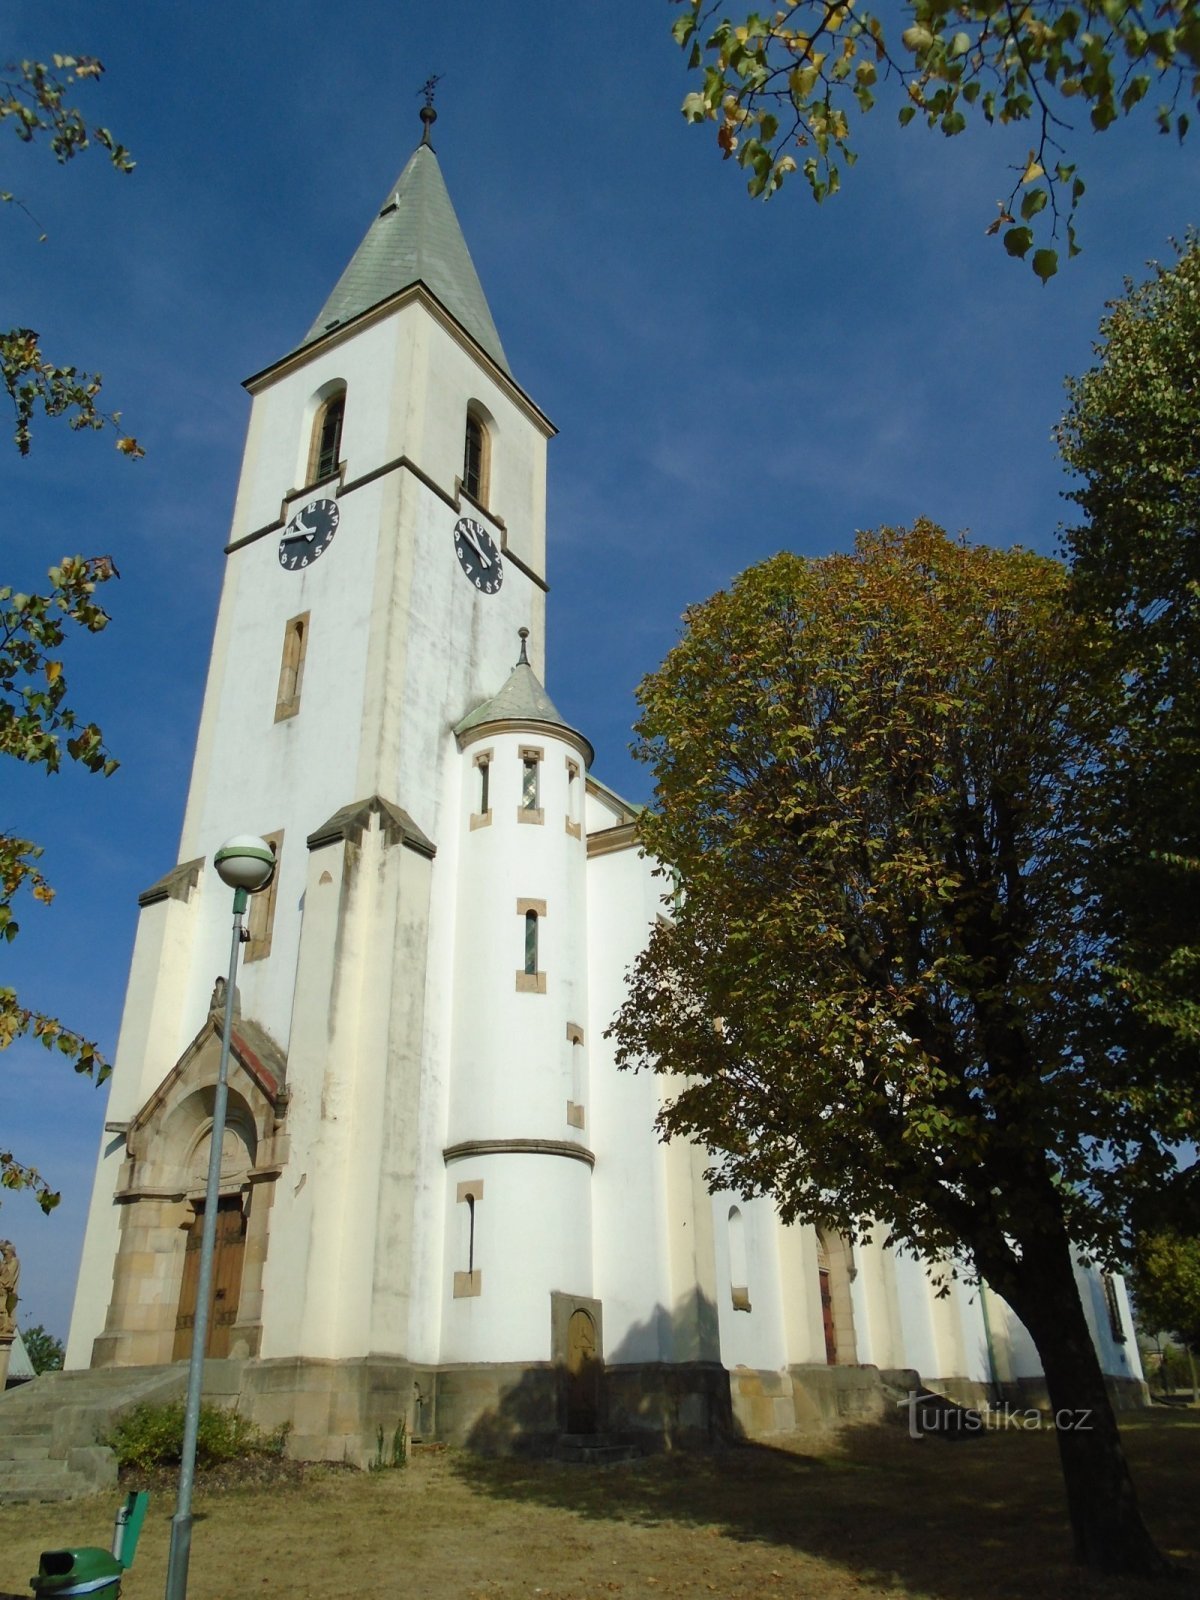 Εκκλησία του Αγ. Ιάκωβος ο Πρεσβύτερος, απόστολος (Stračov)